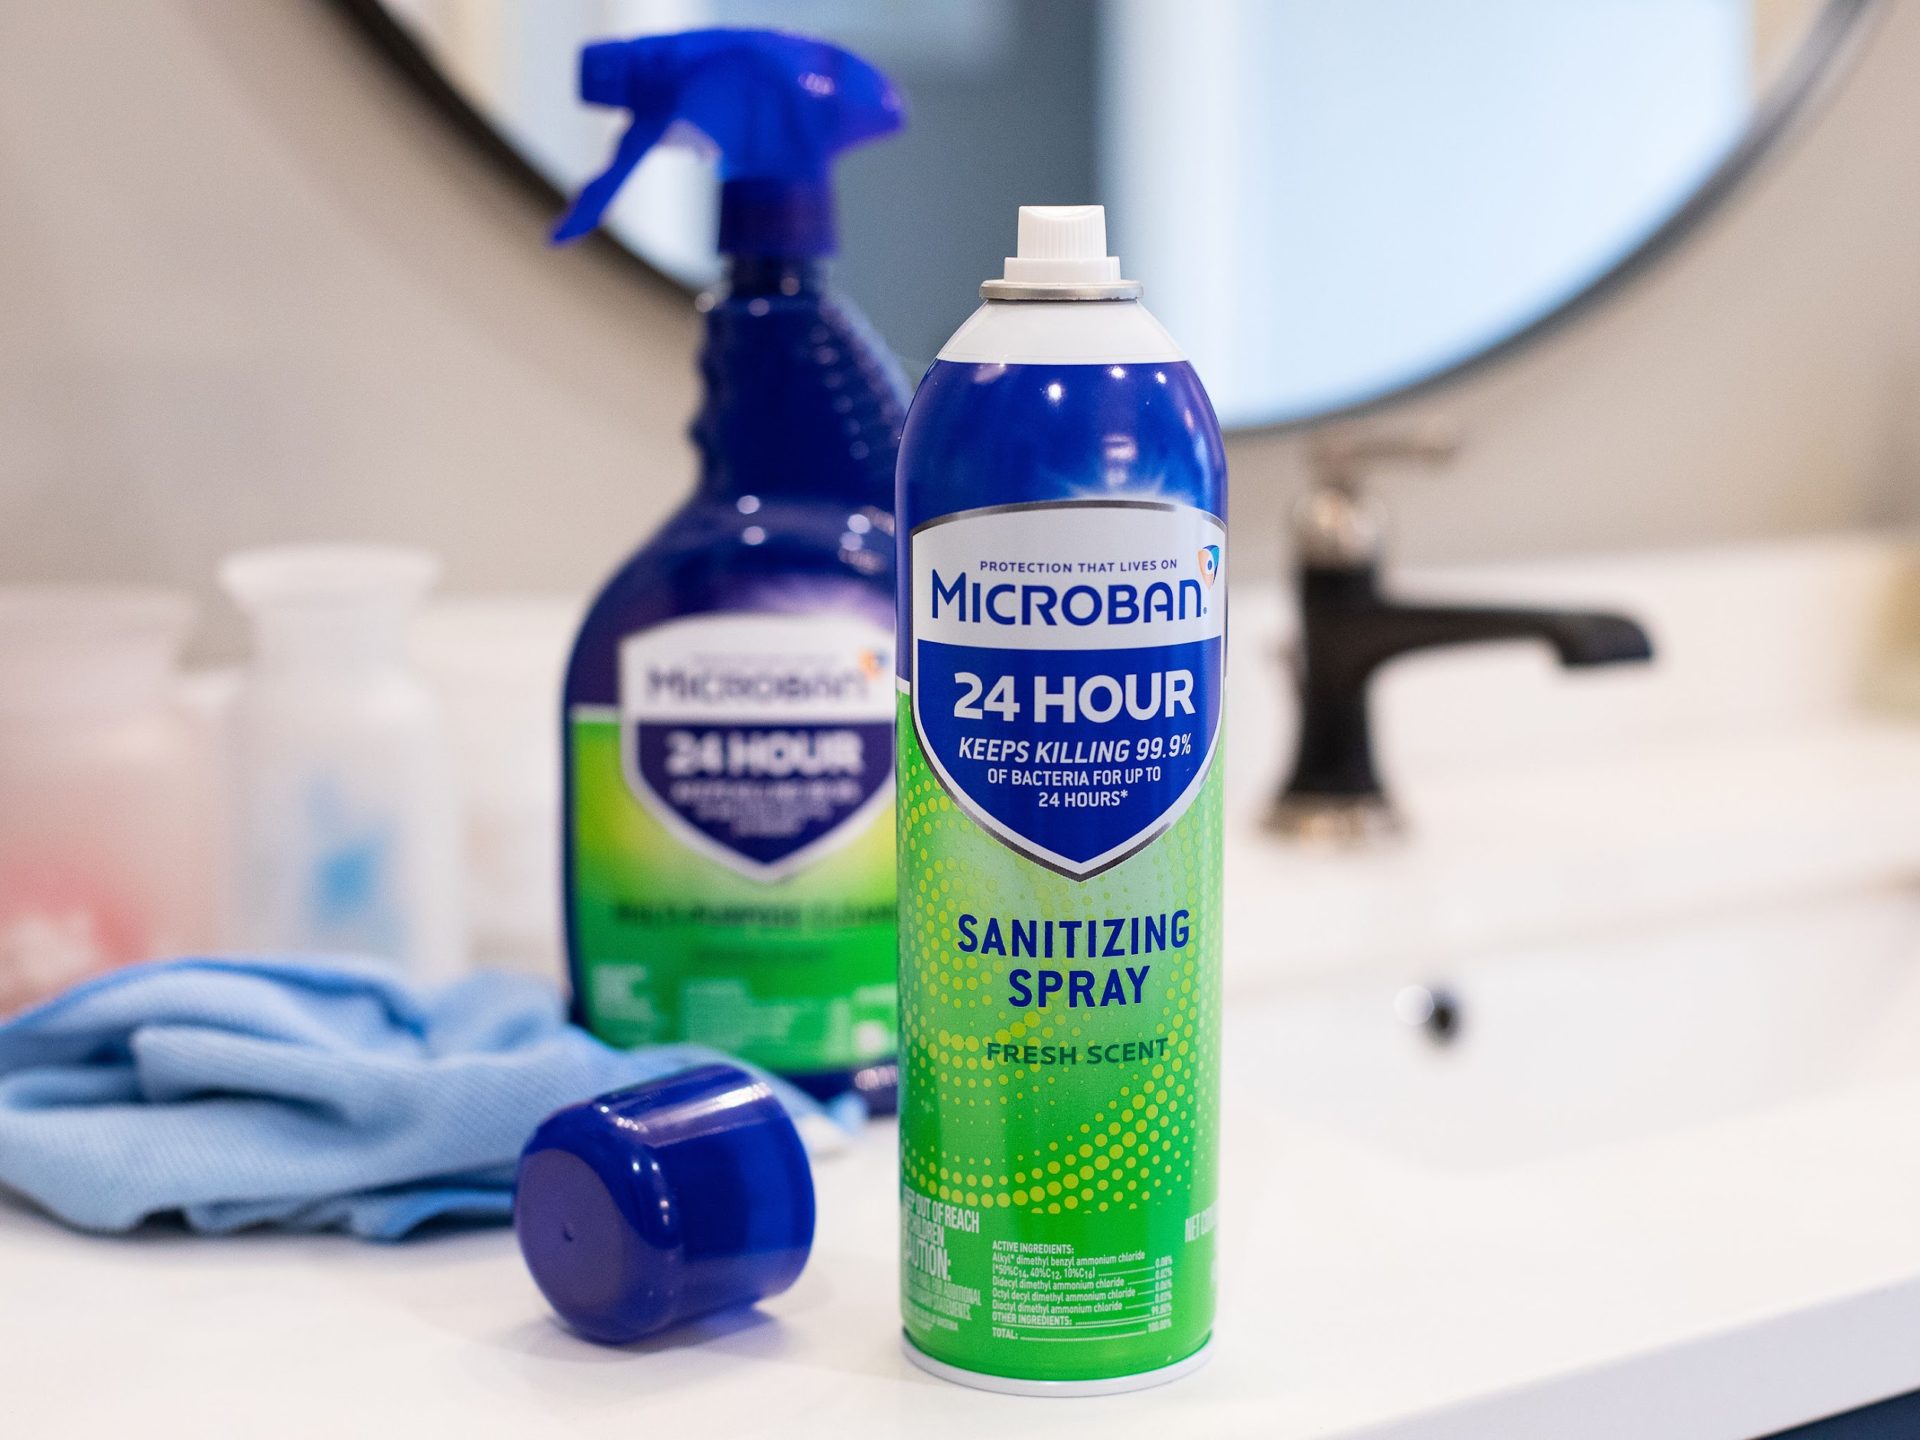 Microban Multi-Purpose Or Bathroom Cleaner As Low As $2.29 At Kroger